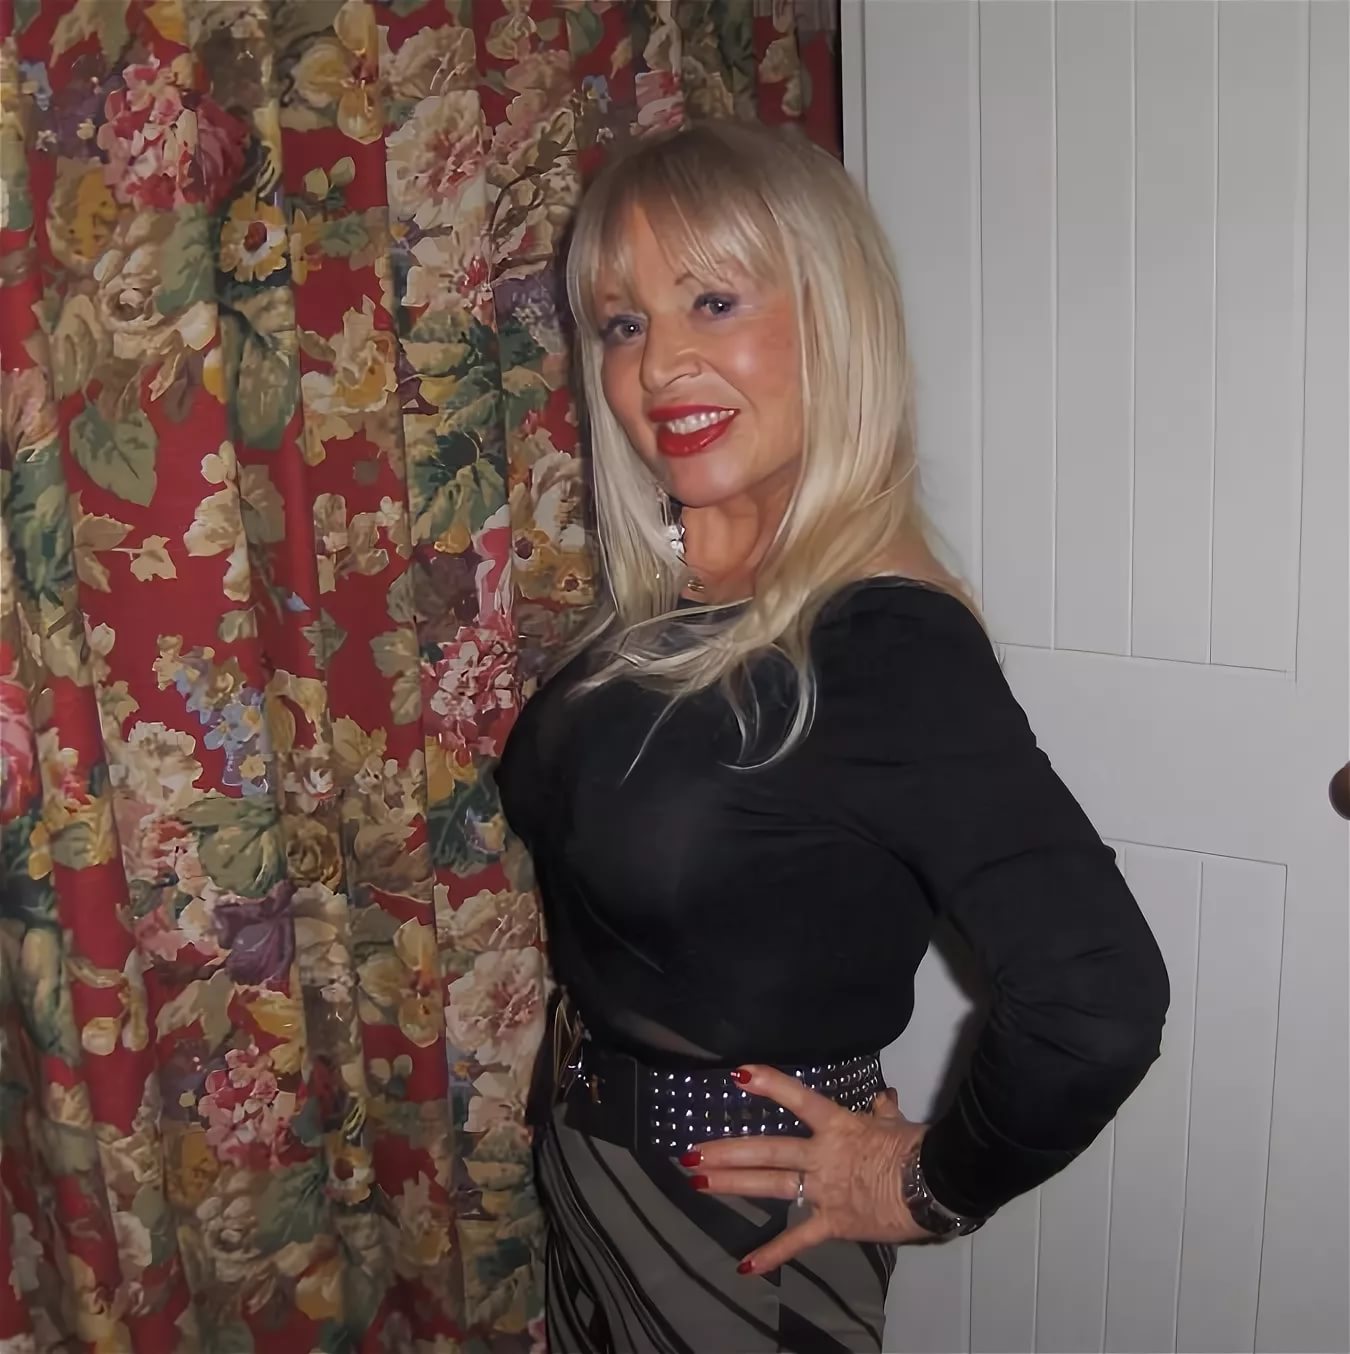 Блондинка 50 лет полна сексуальной энергии